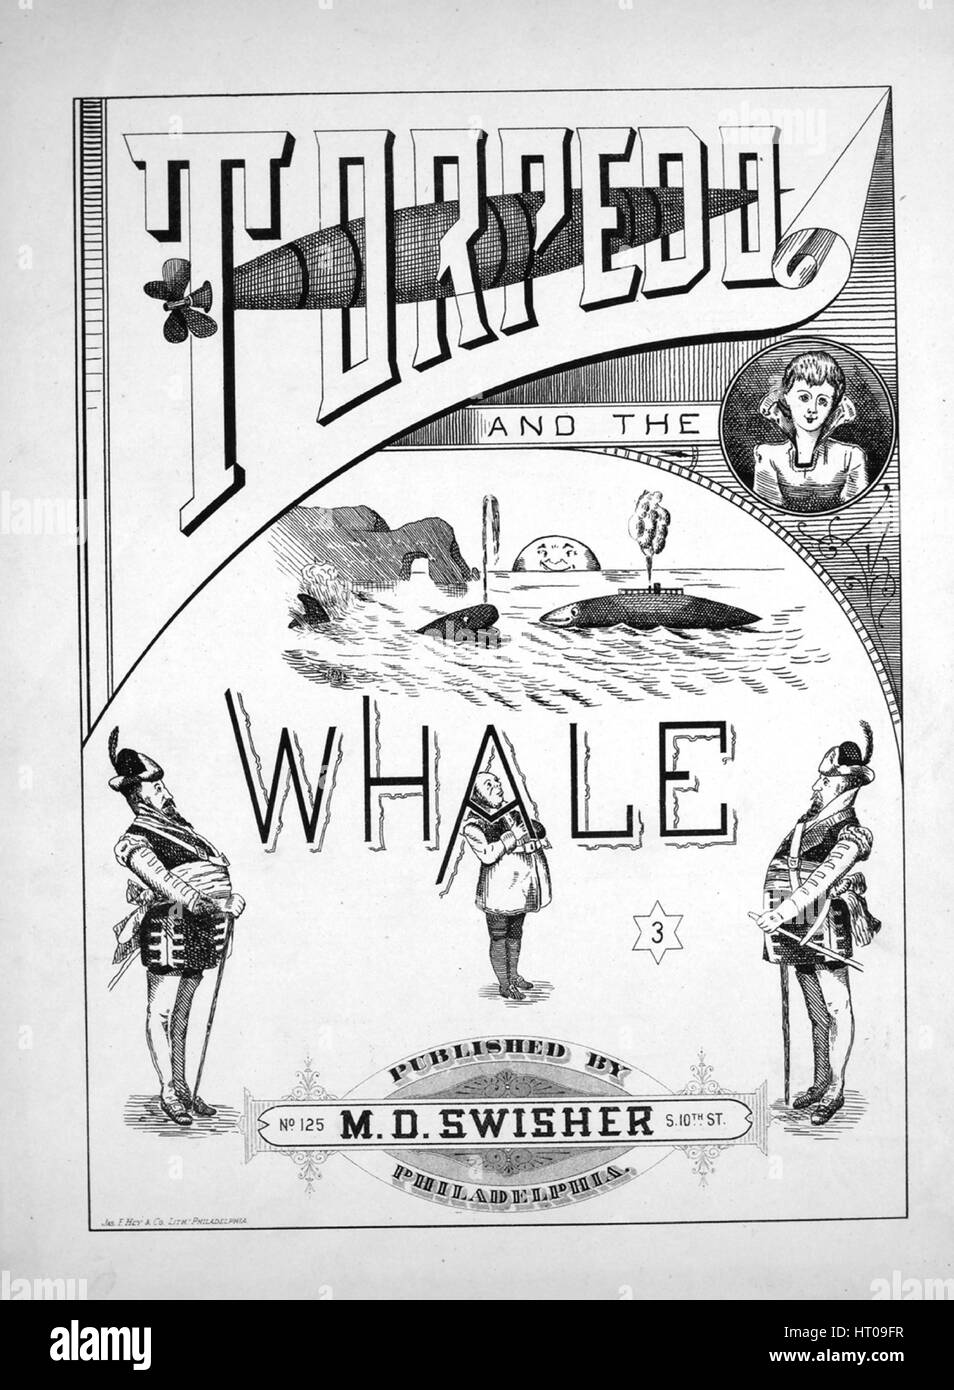 Titelbild der Noten des Liedes "Torpedo and the Whale", mit ursprünglichen Autorschaft Noten lesen '', Vereinigte Staaten, 1900. Der Herausgeber wird als aufgeführt "M.D. Swisher, No. 125 S. 10. St.", die Form der Komposition ist "strophischen", die Instrumentierung ist "Klavier und Stimme", die erste Linie liest "In the North Sea Liv hatte einen Wal, In the North Sea Liv hatte einen Wal, groß in den Knochen und großen Schwanz" und der Abbildung Künstler aufgeführt als "Jas. F. Hey und Co. Lithr. Philadelphia. ". Stockfoto